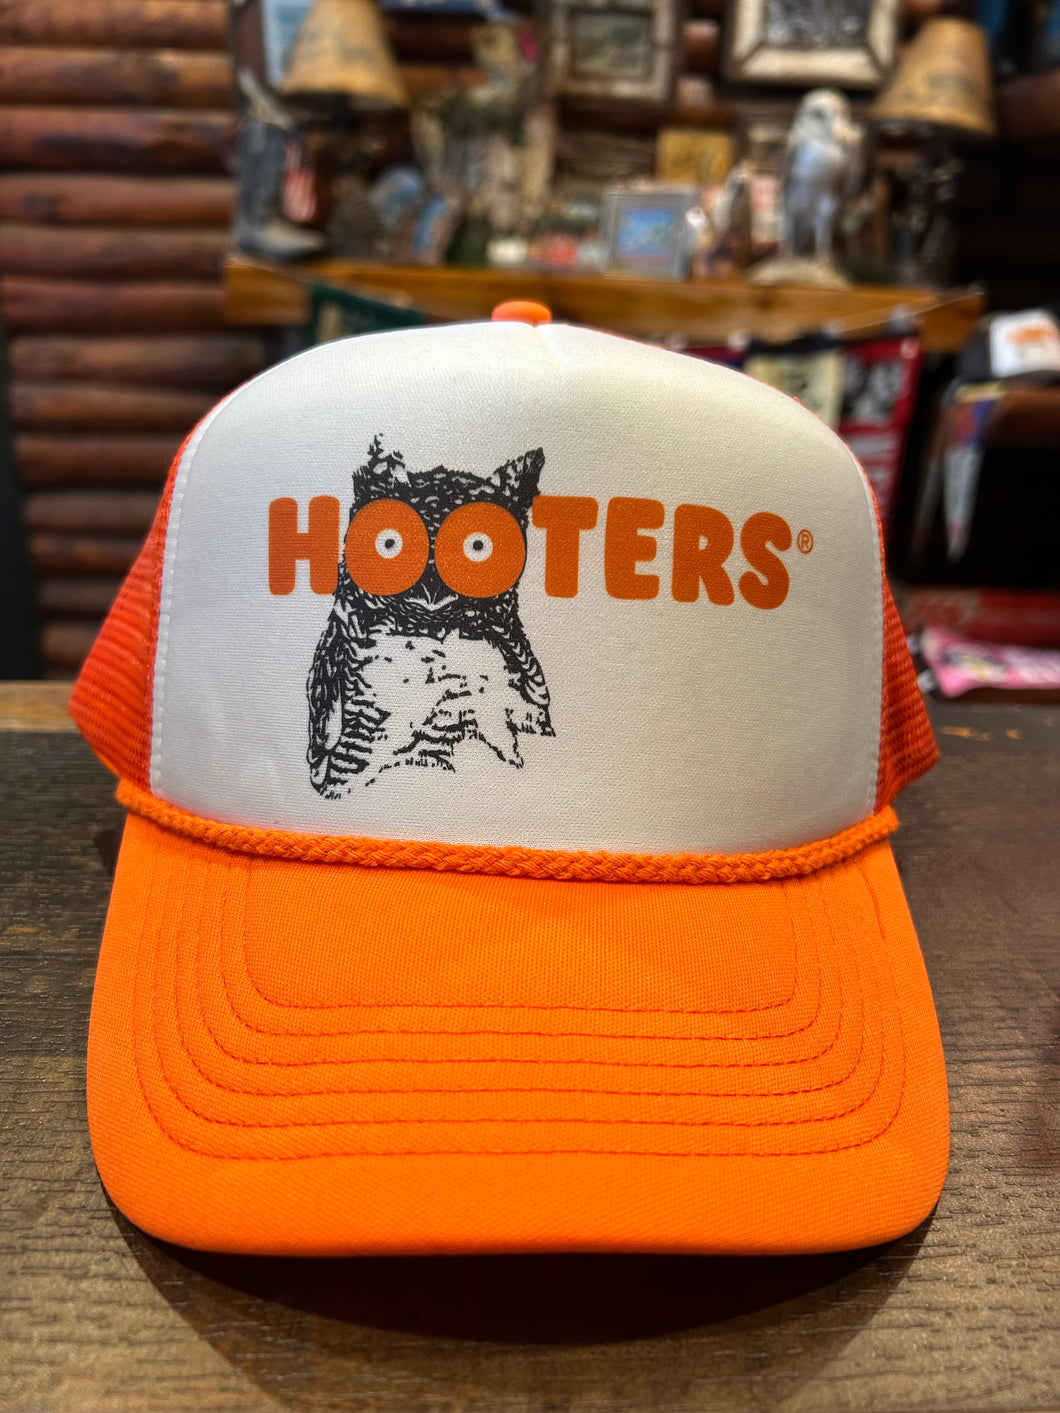 Hooters Orange Trucker Cap